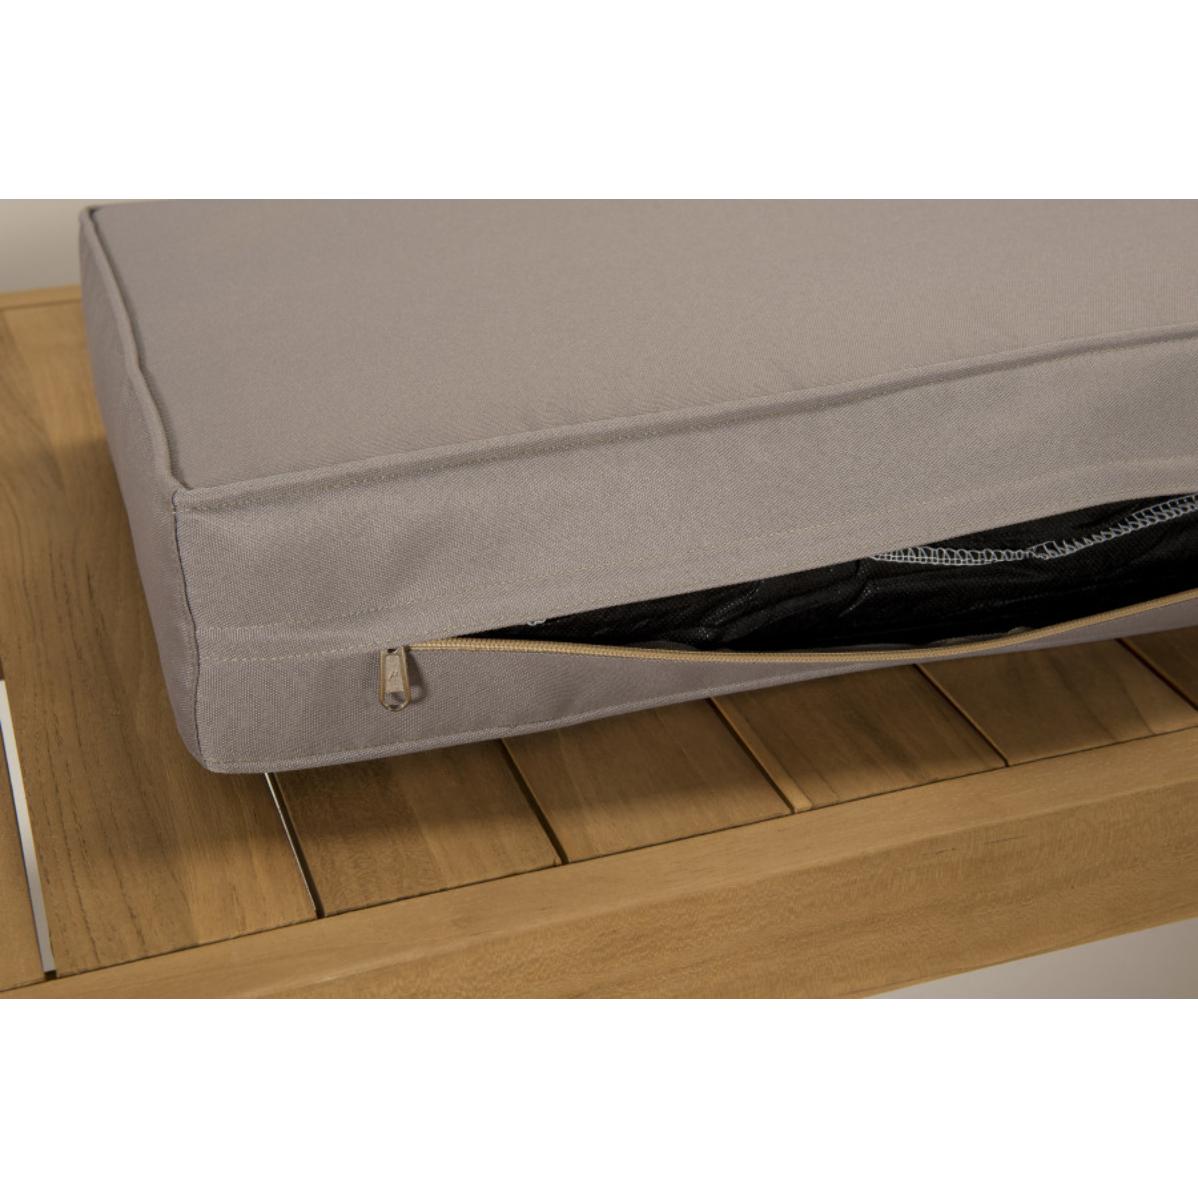 HALICE - SALON DE JARDIN EN BOIS TECK - 1 canapé 2p. , 2 fauteuils coussins waterproof et table basse rectangulaire 110x60 cm